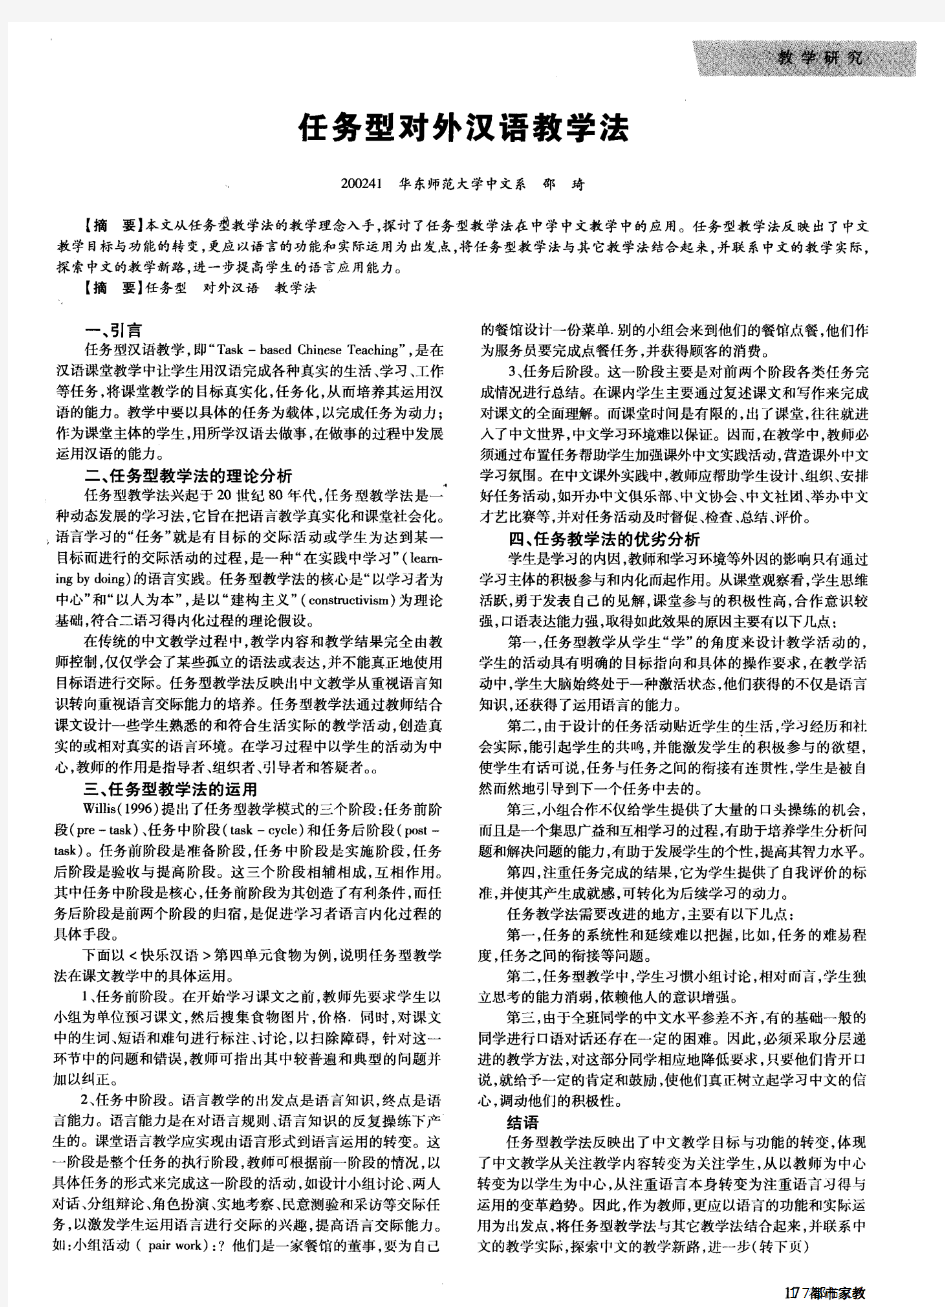 任务型对外汉语教学法